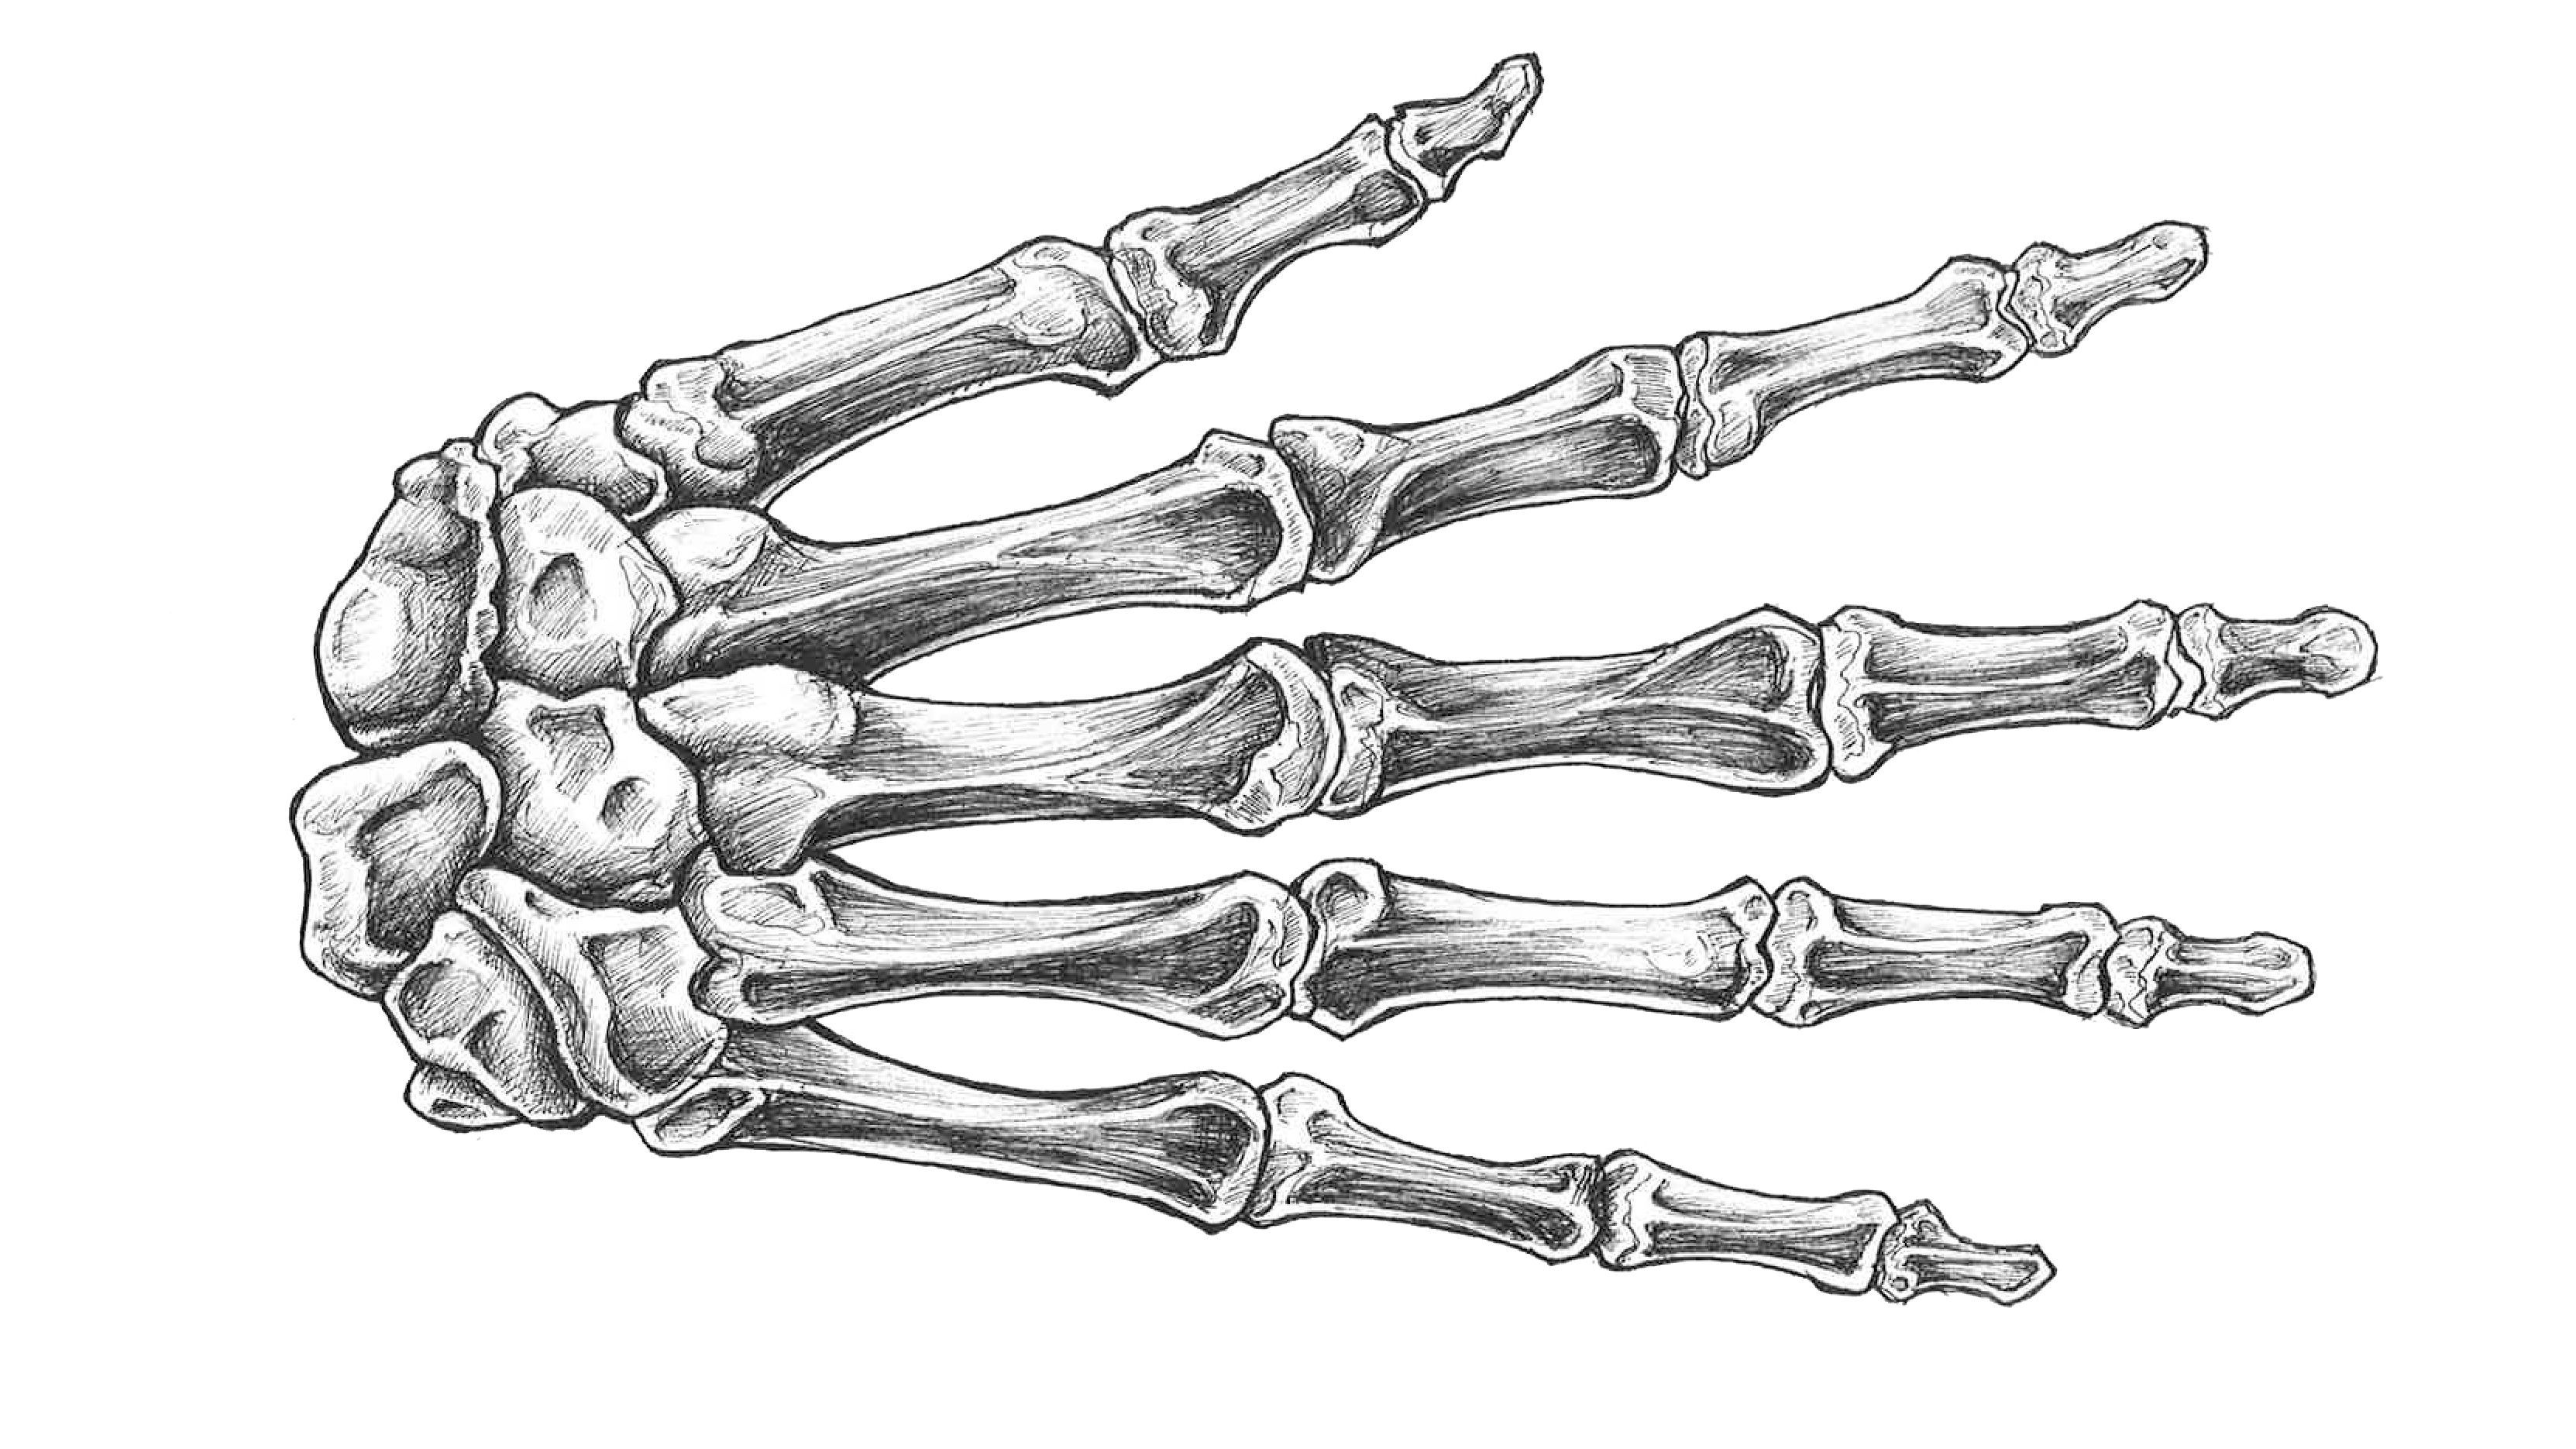 Скелет кисти руки человека анатомия